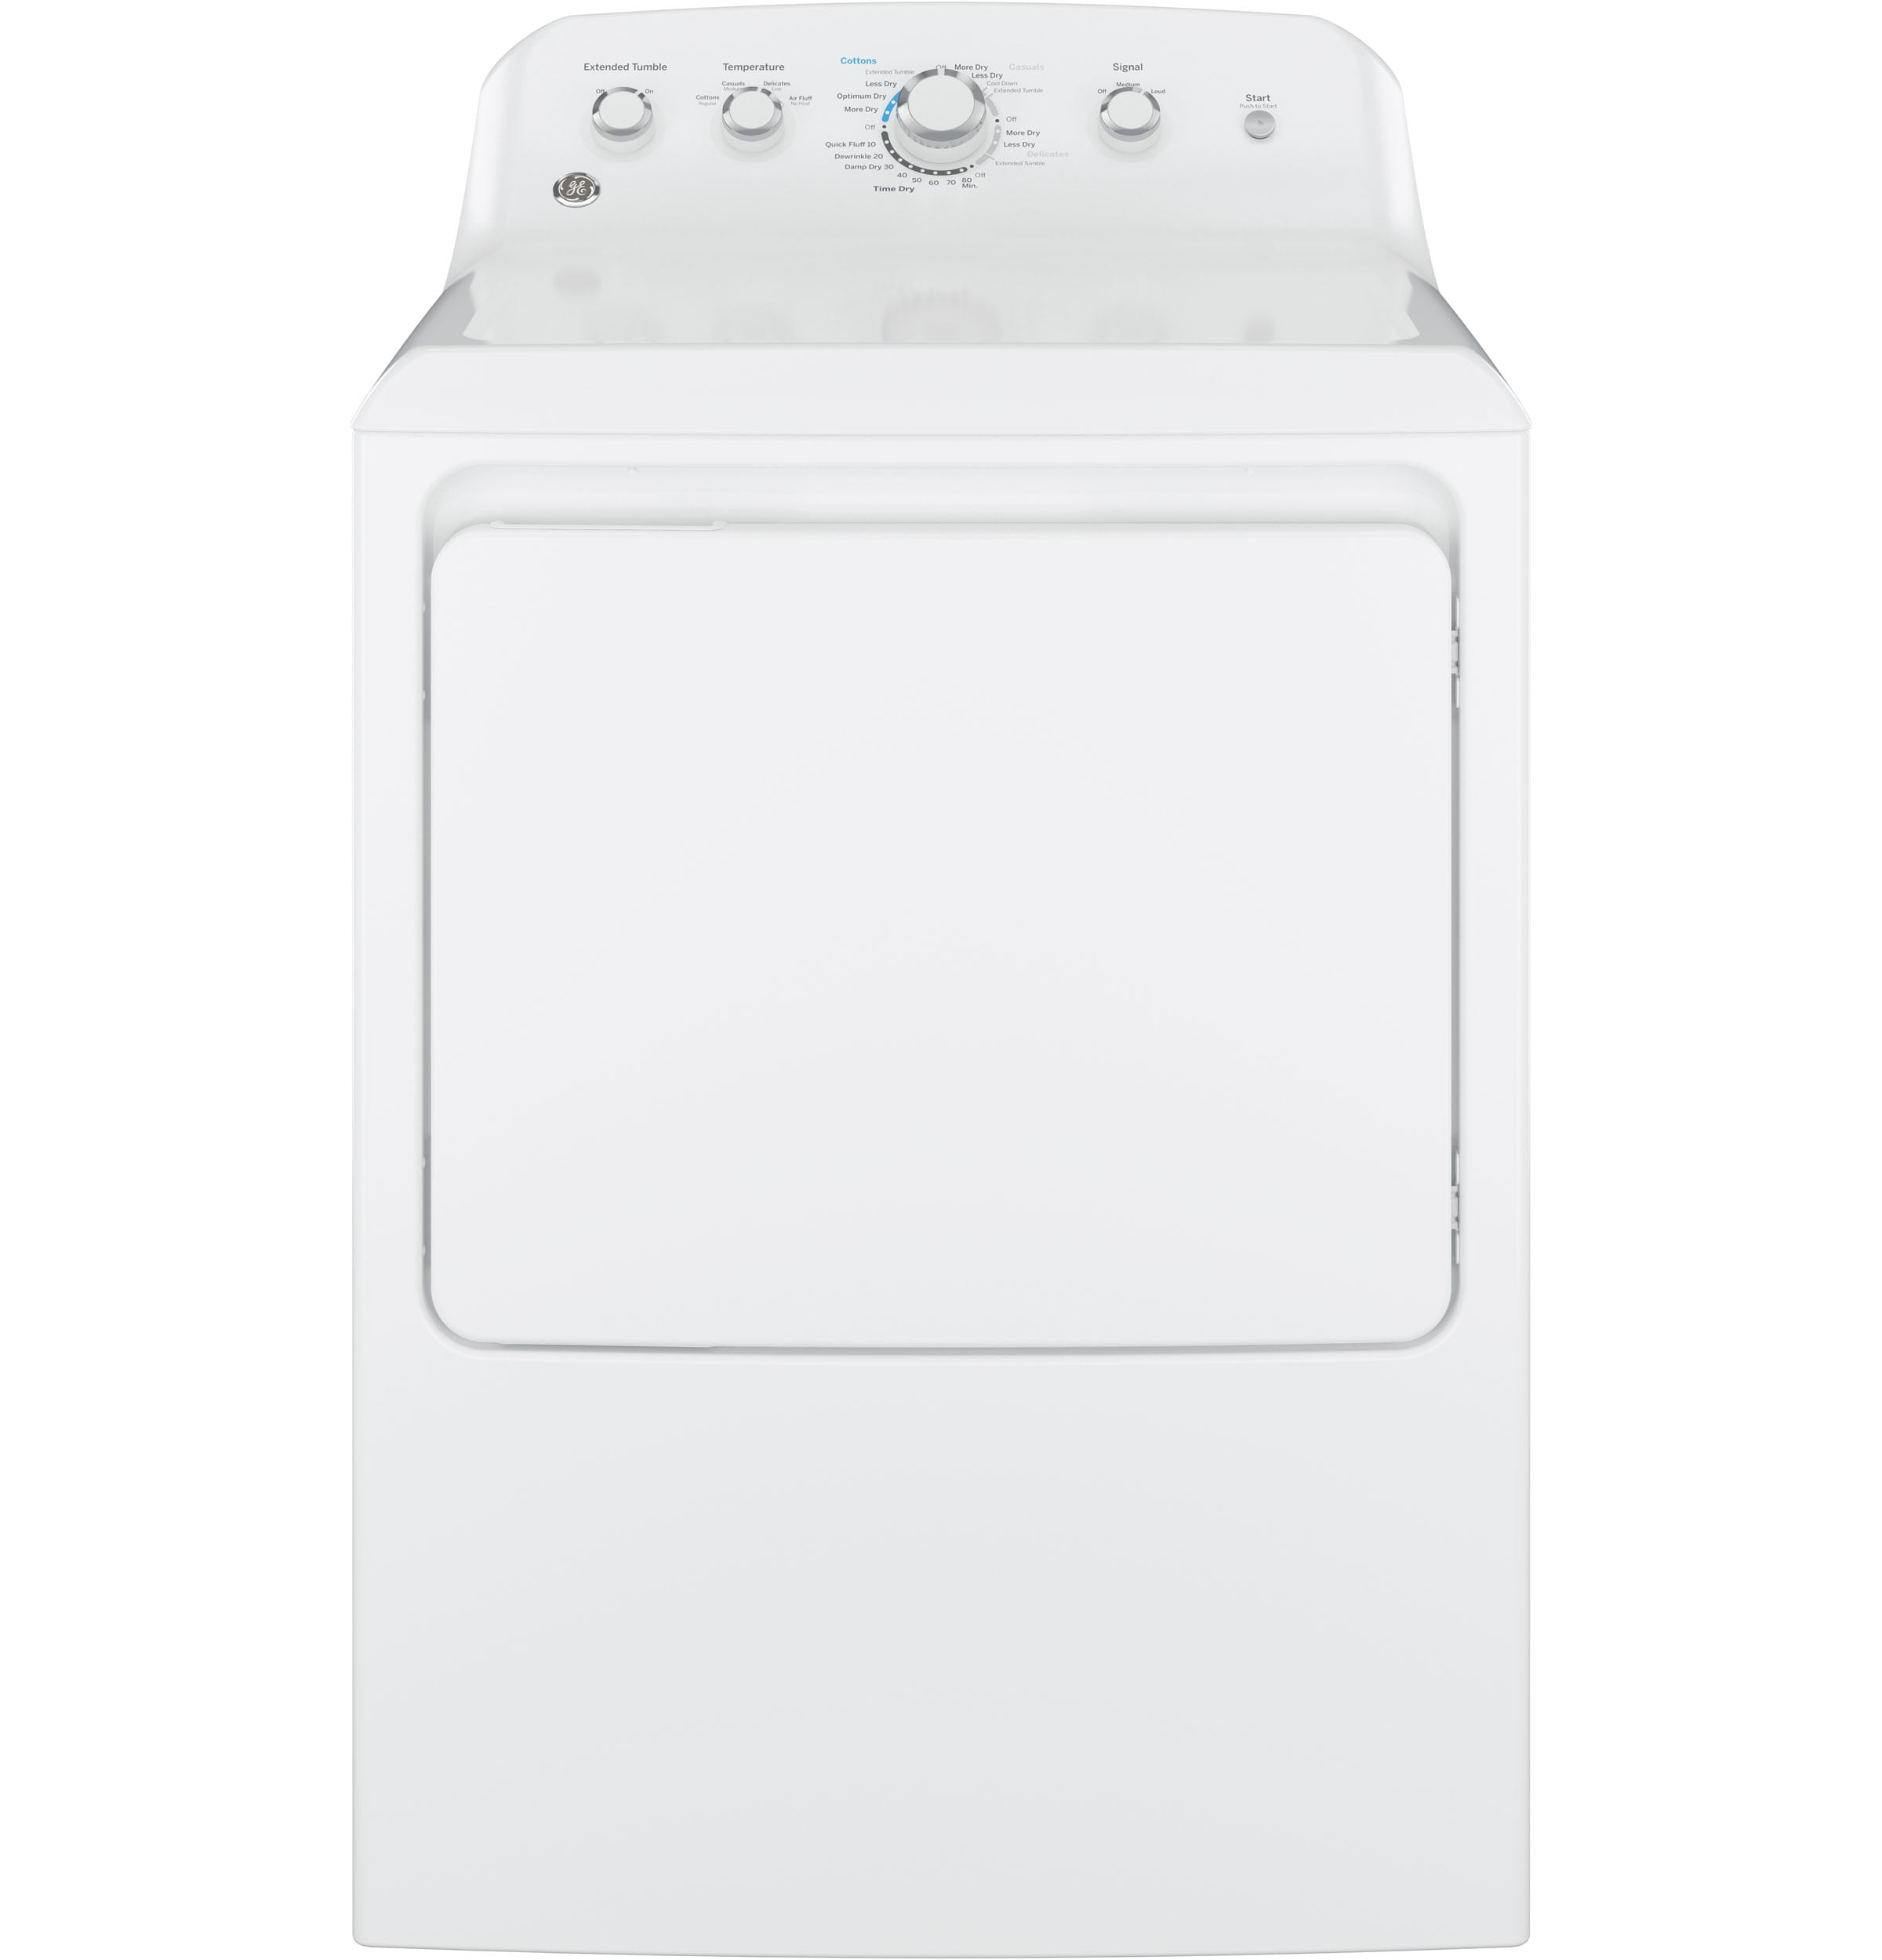 Wholesale oasis washing machine Space-saving, Fully Automatic Washer 